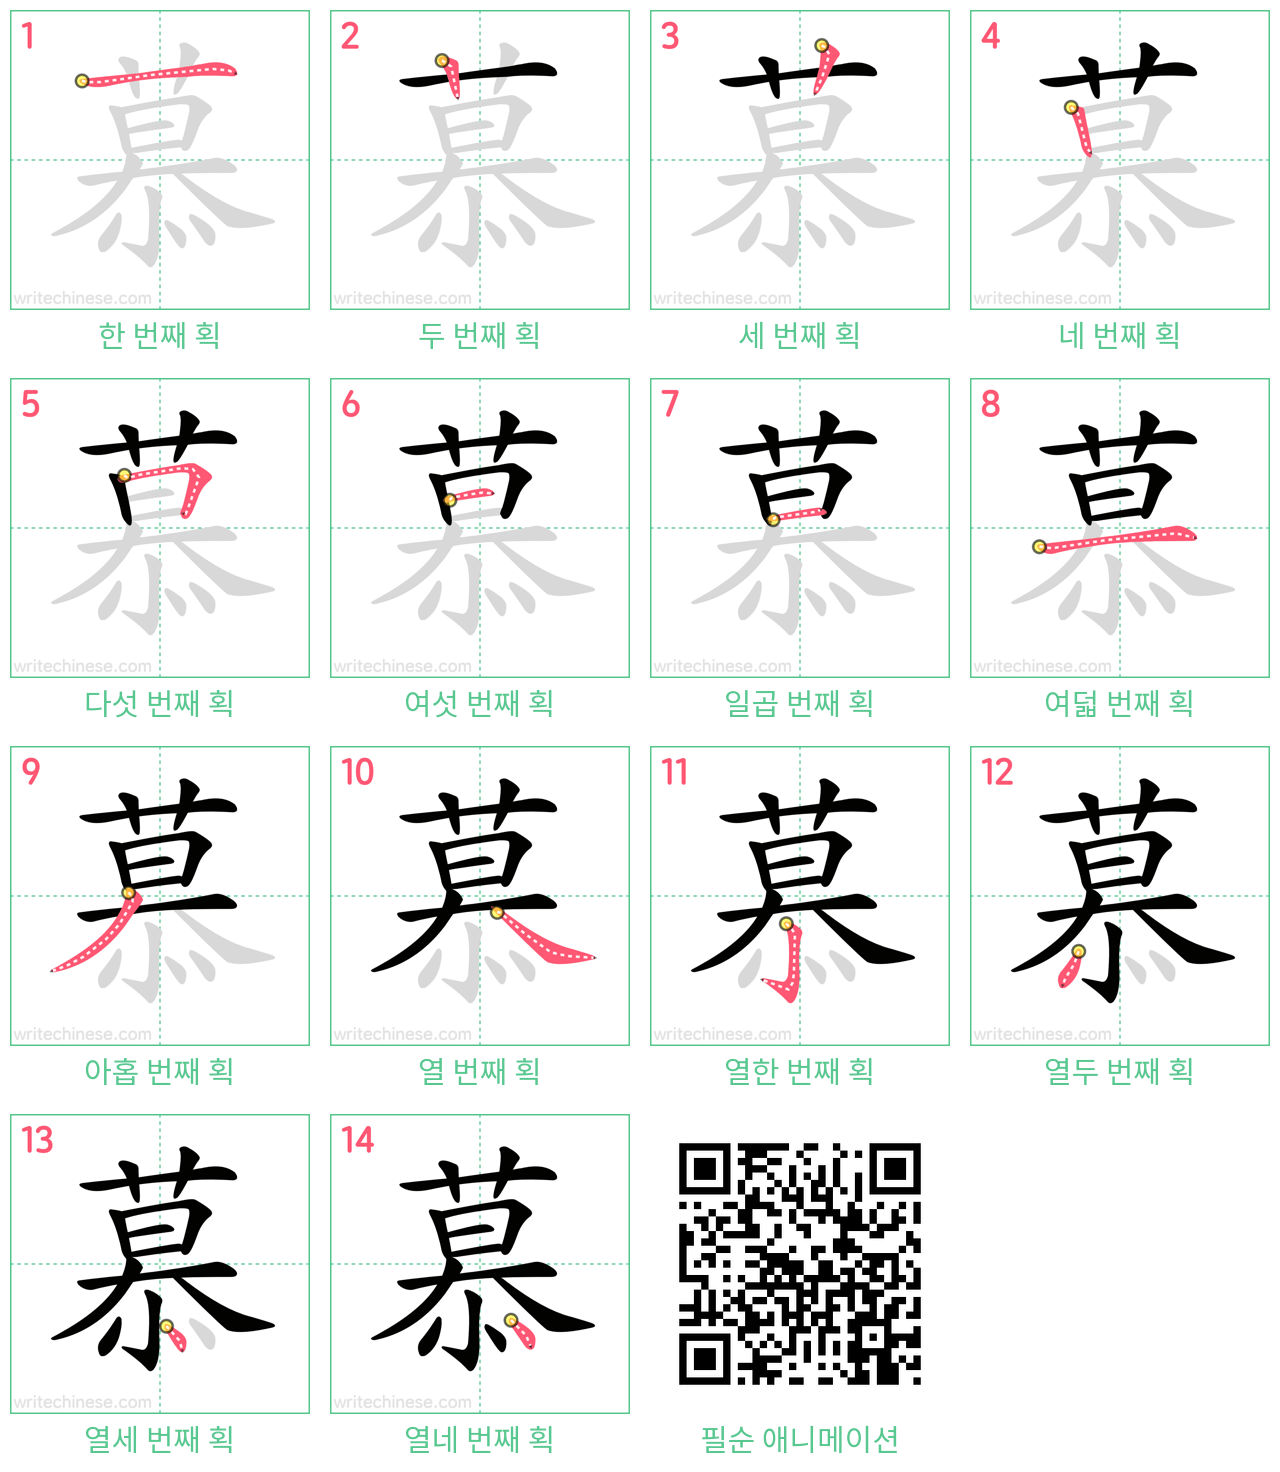 慕 step-by-step stroke order diagrams